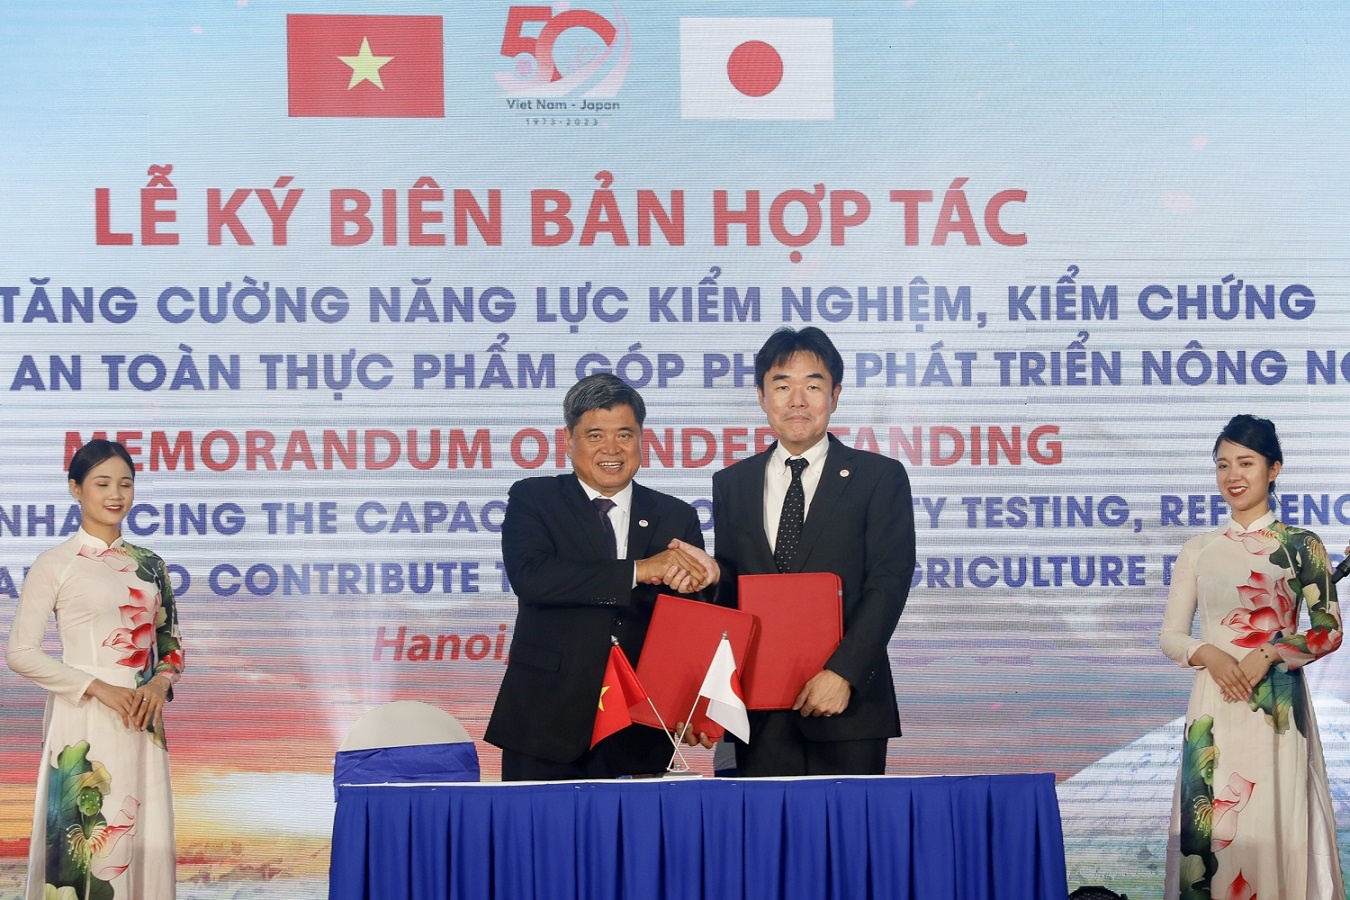 JICA hỗ trợ cải thiện chất lượng, an toàn thực phẩm nông thủy sản Việt Nam